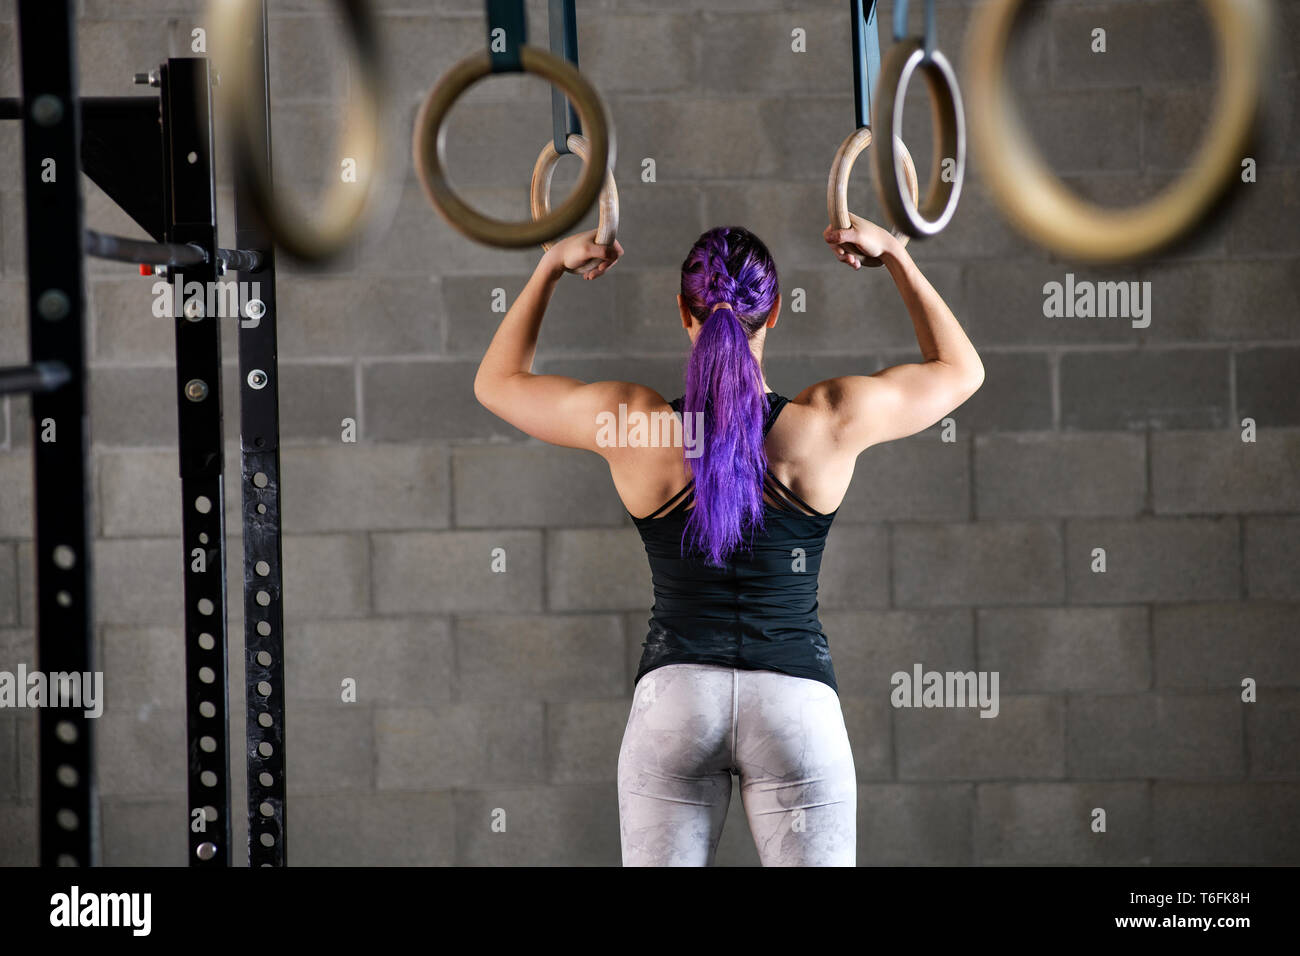 Muskulös passen starke Frau Athlet bereitet sich auf die Ringe in einem Fitnessstudio steht dabei mit dem Gesicht von der Kamera entfernt halten Sie in einem Gesundheits- und Fitnes zu arbeiten Stockfoto